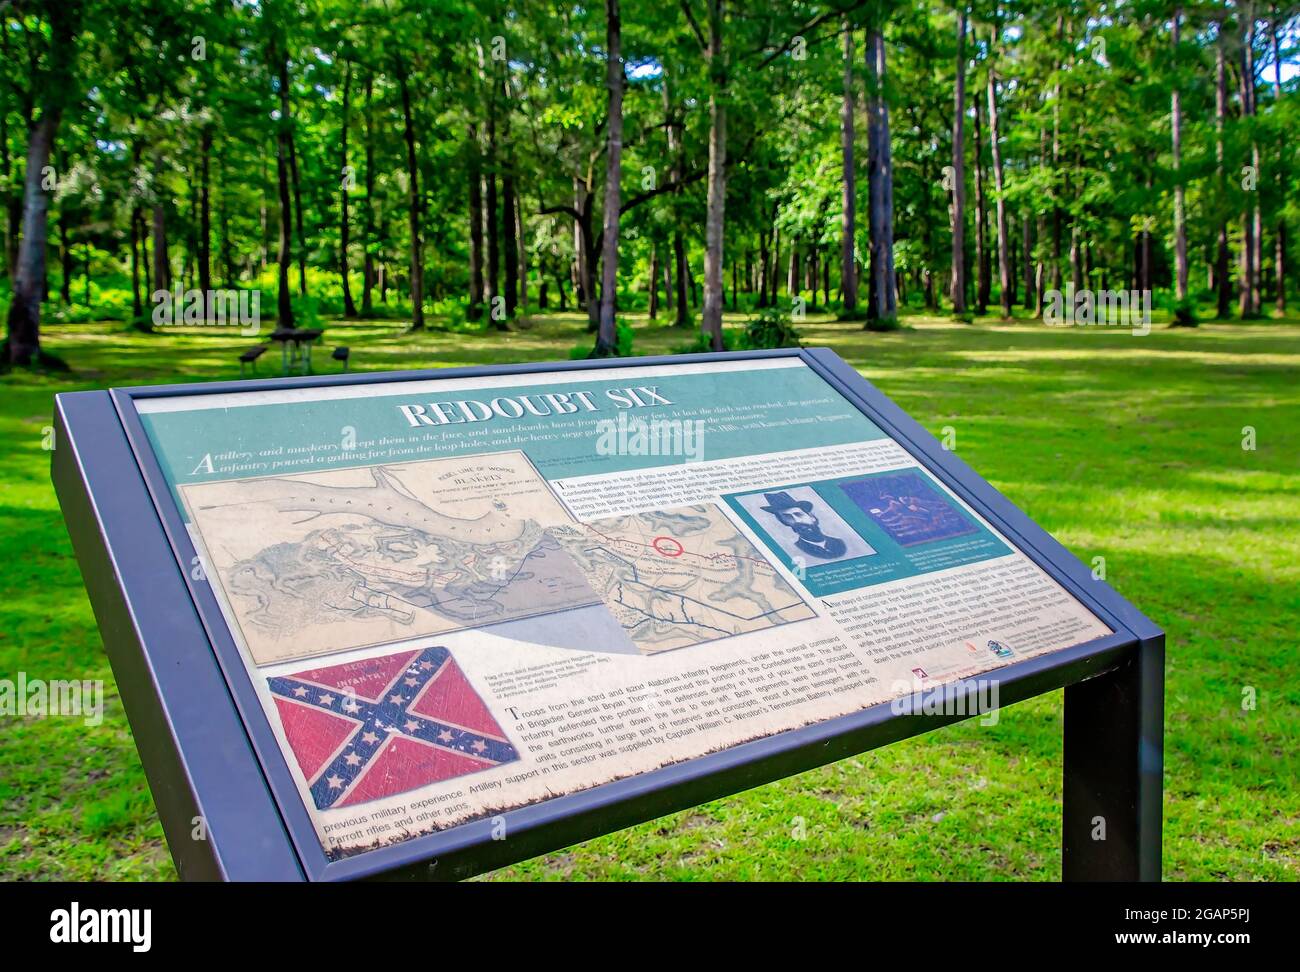 Il Redoubt Six, una posizione militare chiave durante la battaglia di Fort Blakeley della Guerra civile americana, è raffigurato nello storico Blakeley state Park. Foto Stock